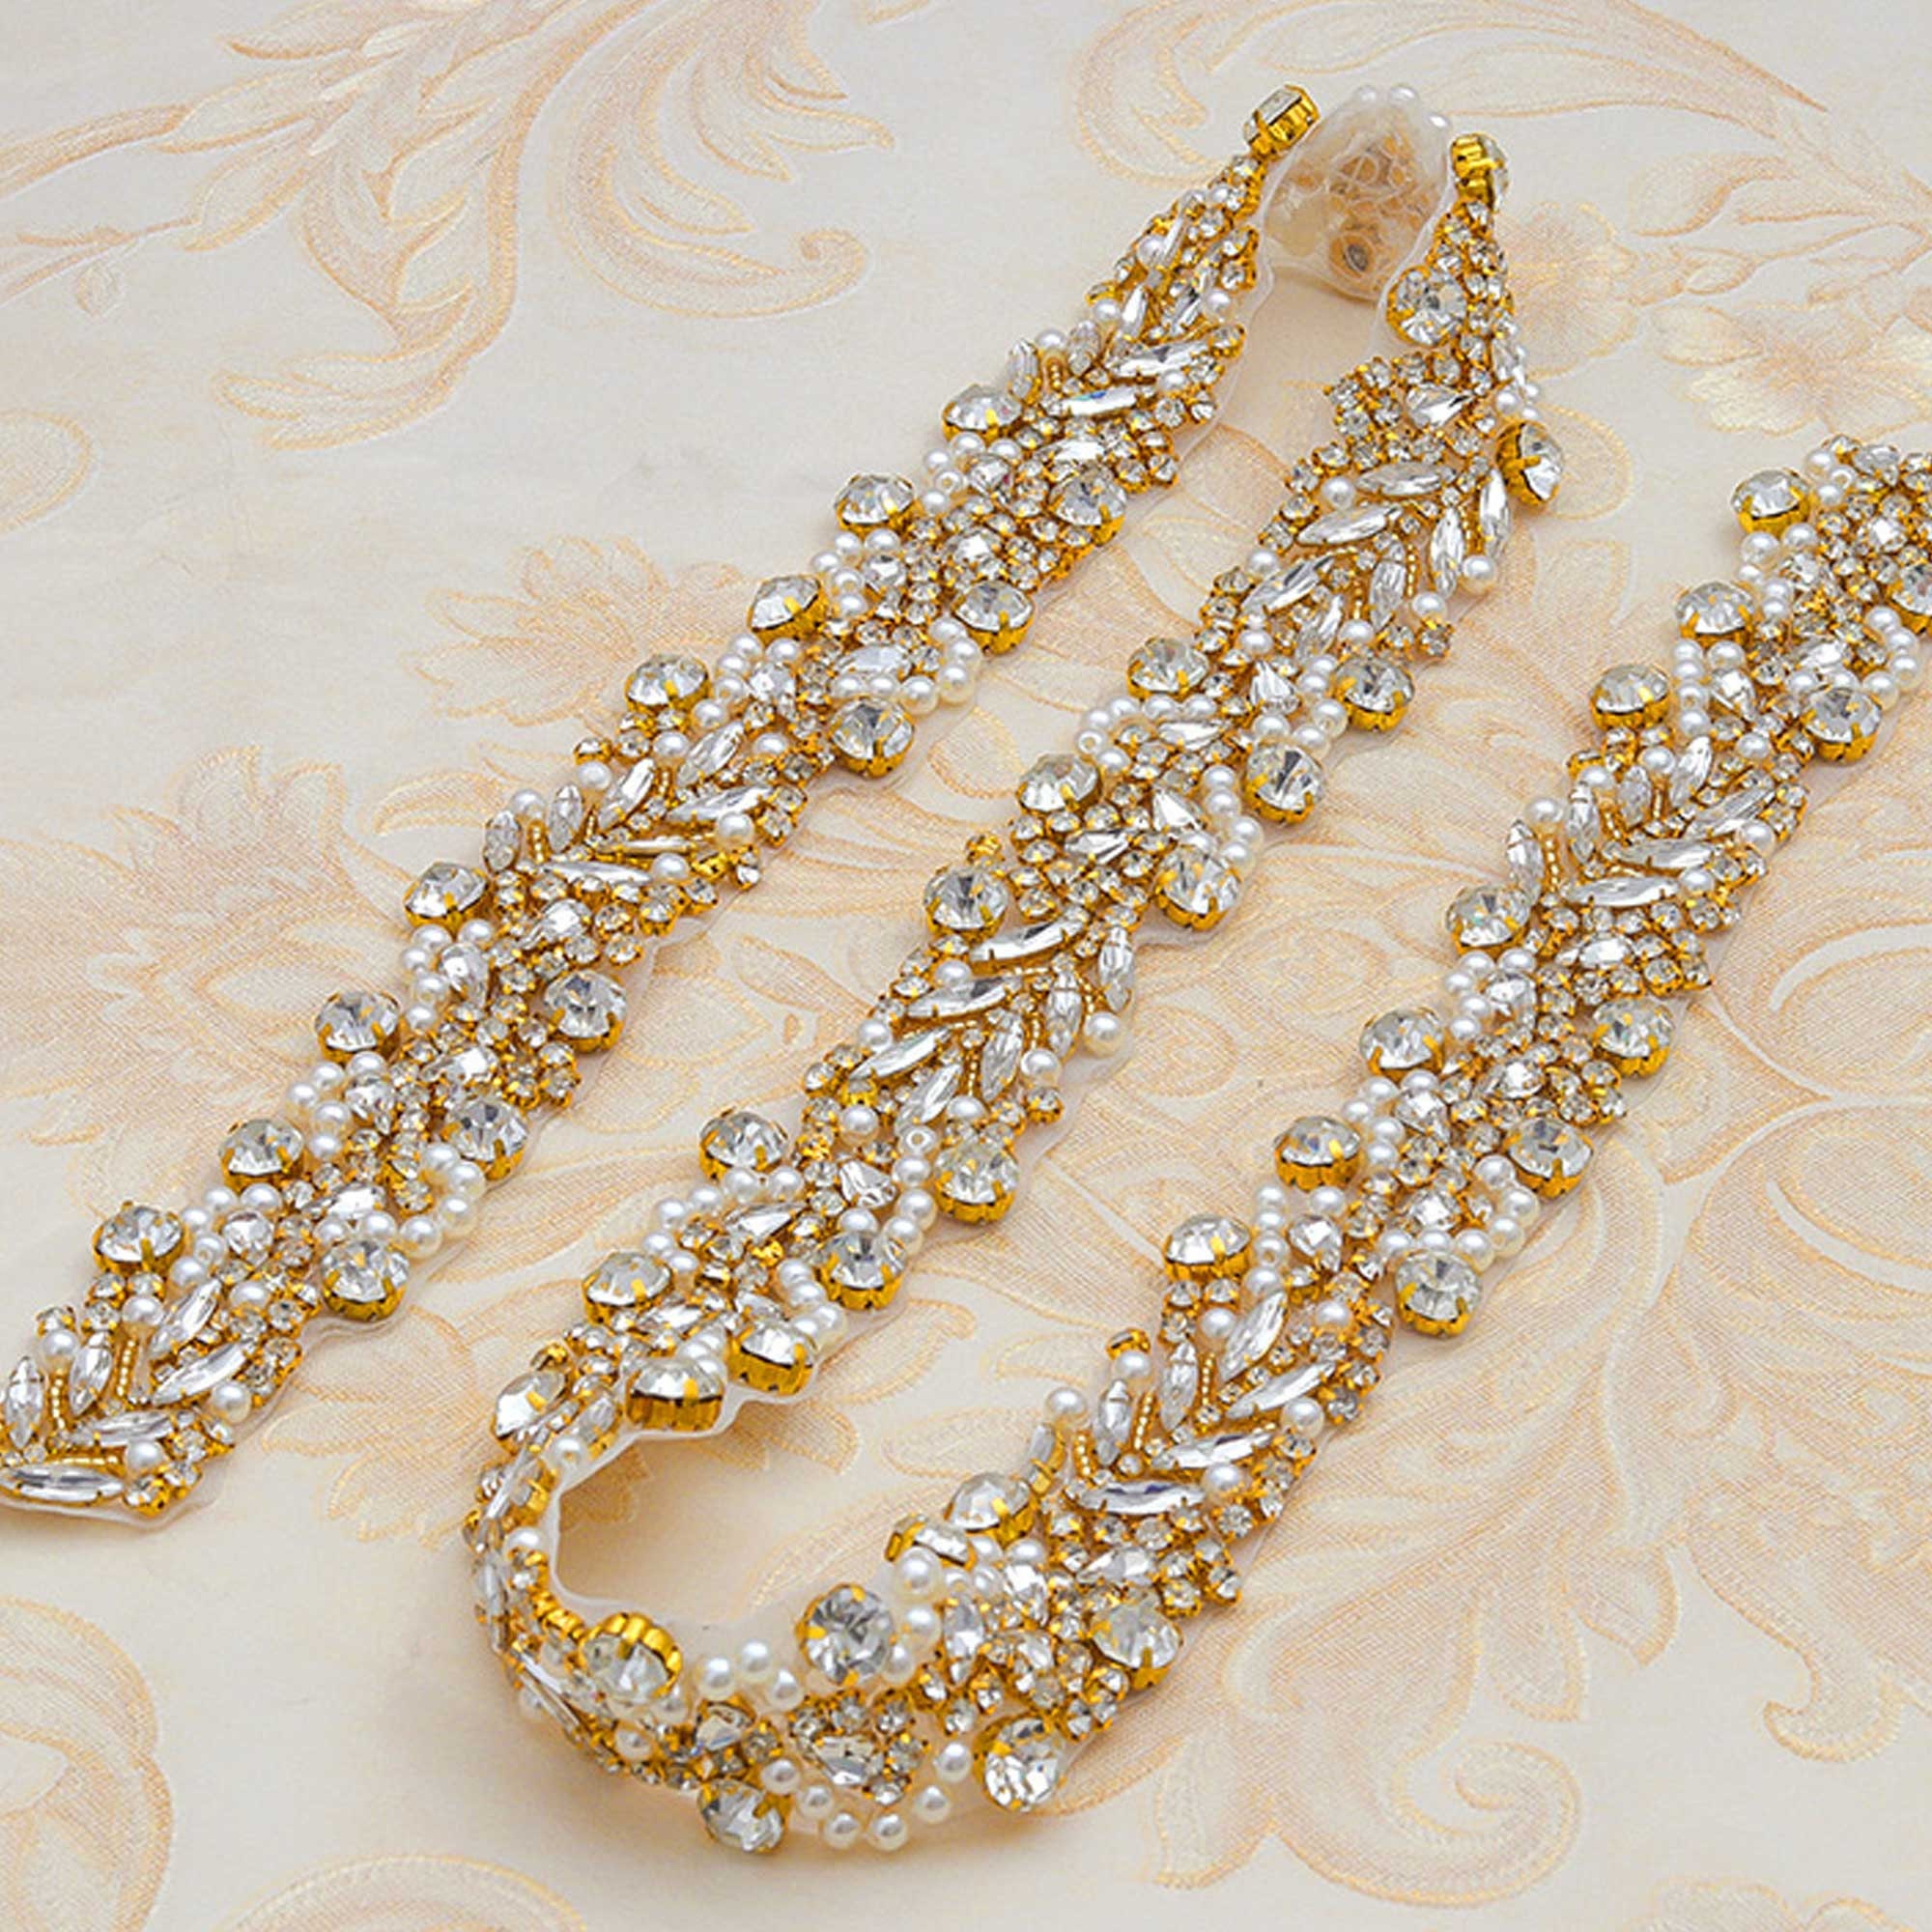 1 YARD) Silver clear bridal beaded crystal rhinestone applique trim belt  gold sewing iron on for wedding dress clothing WDD0278